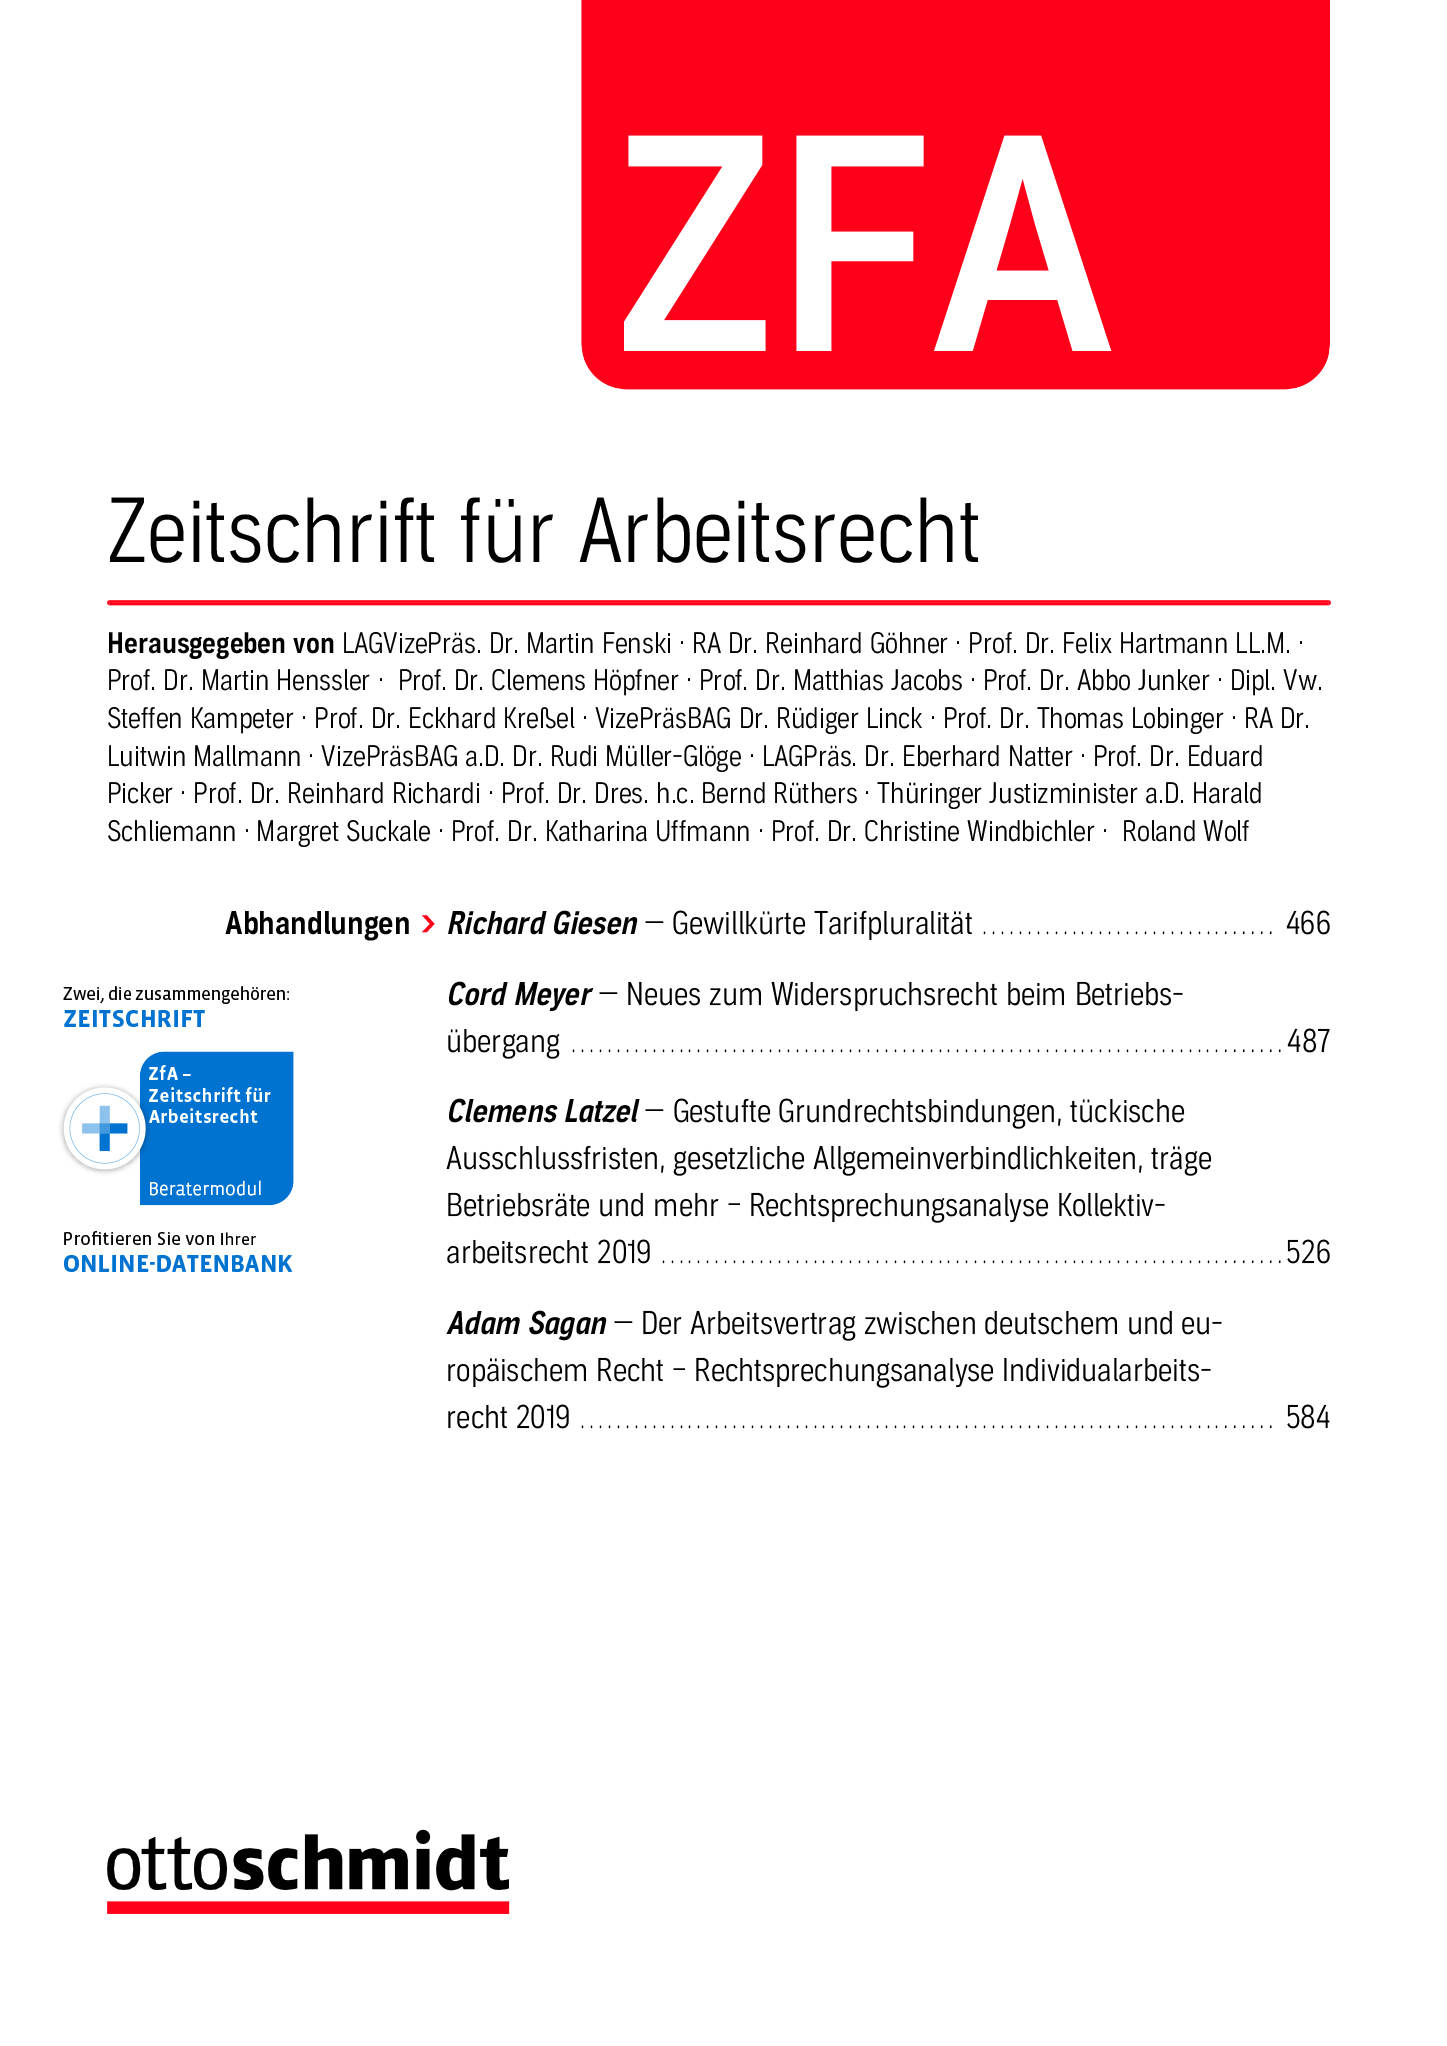 Zeitschrift für Arbeitsrecht (ZFA) Coverabbildung